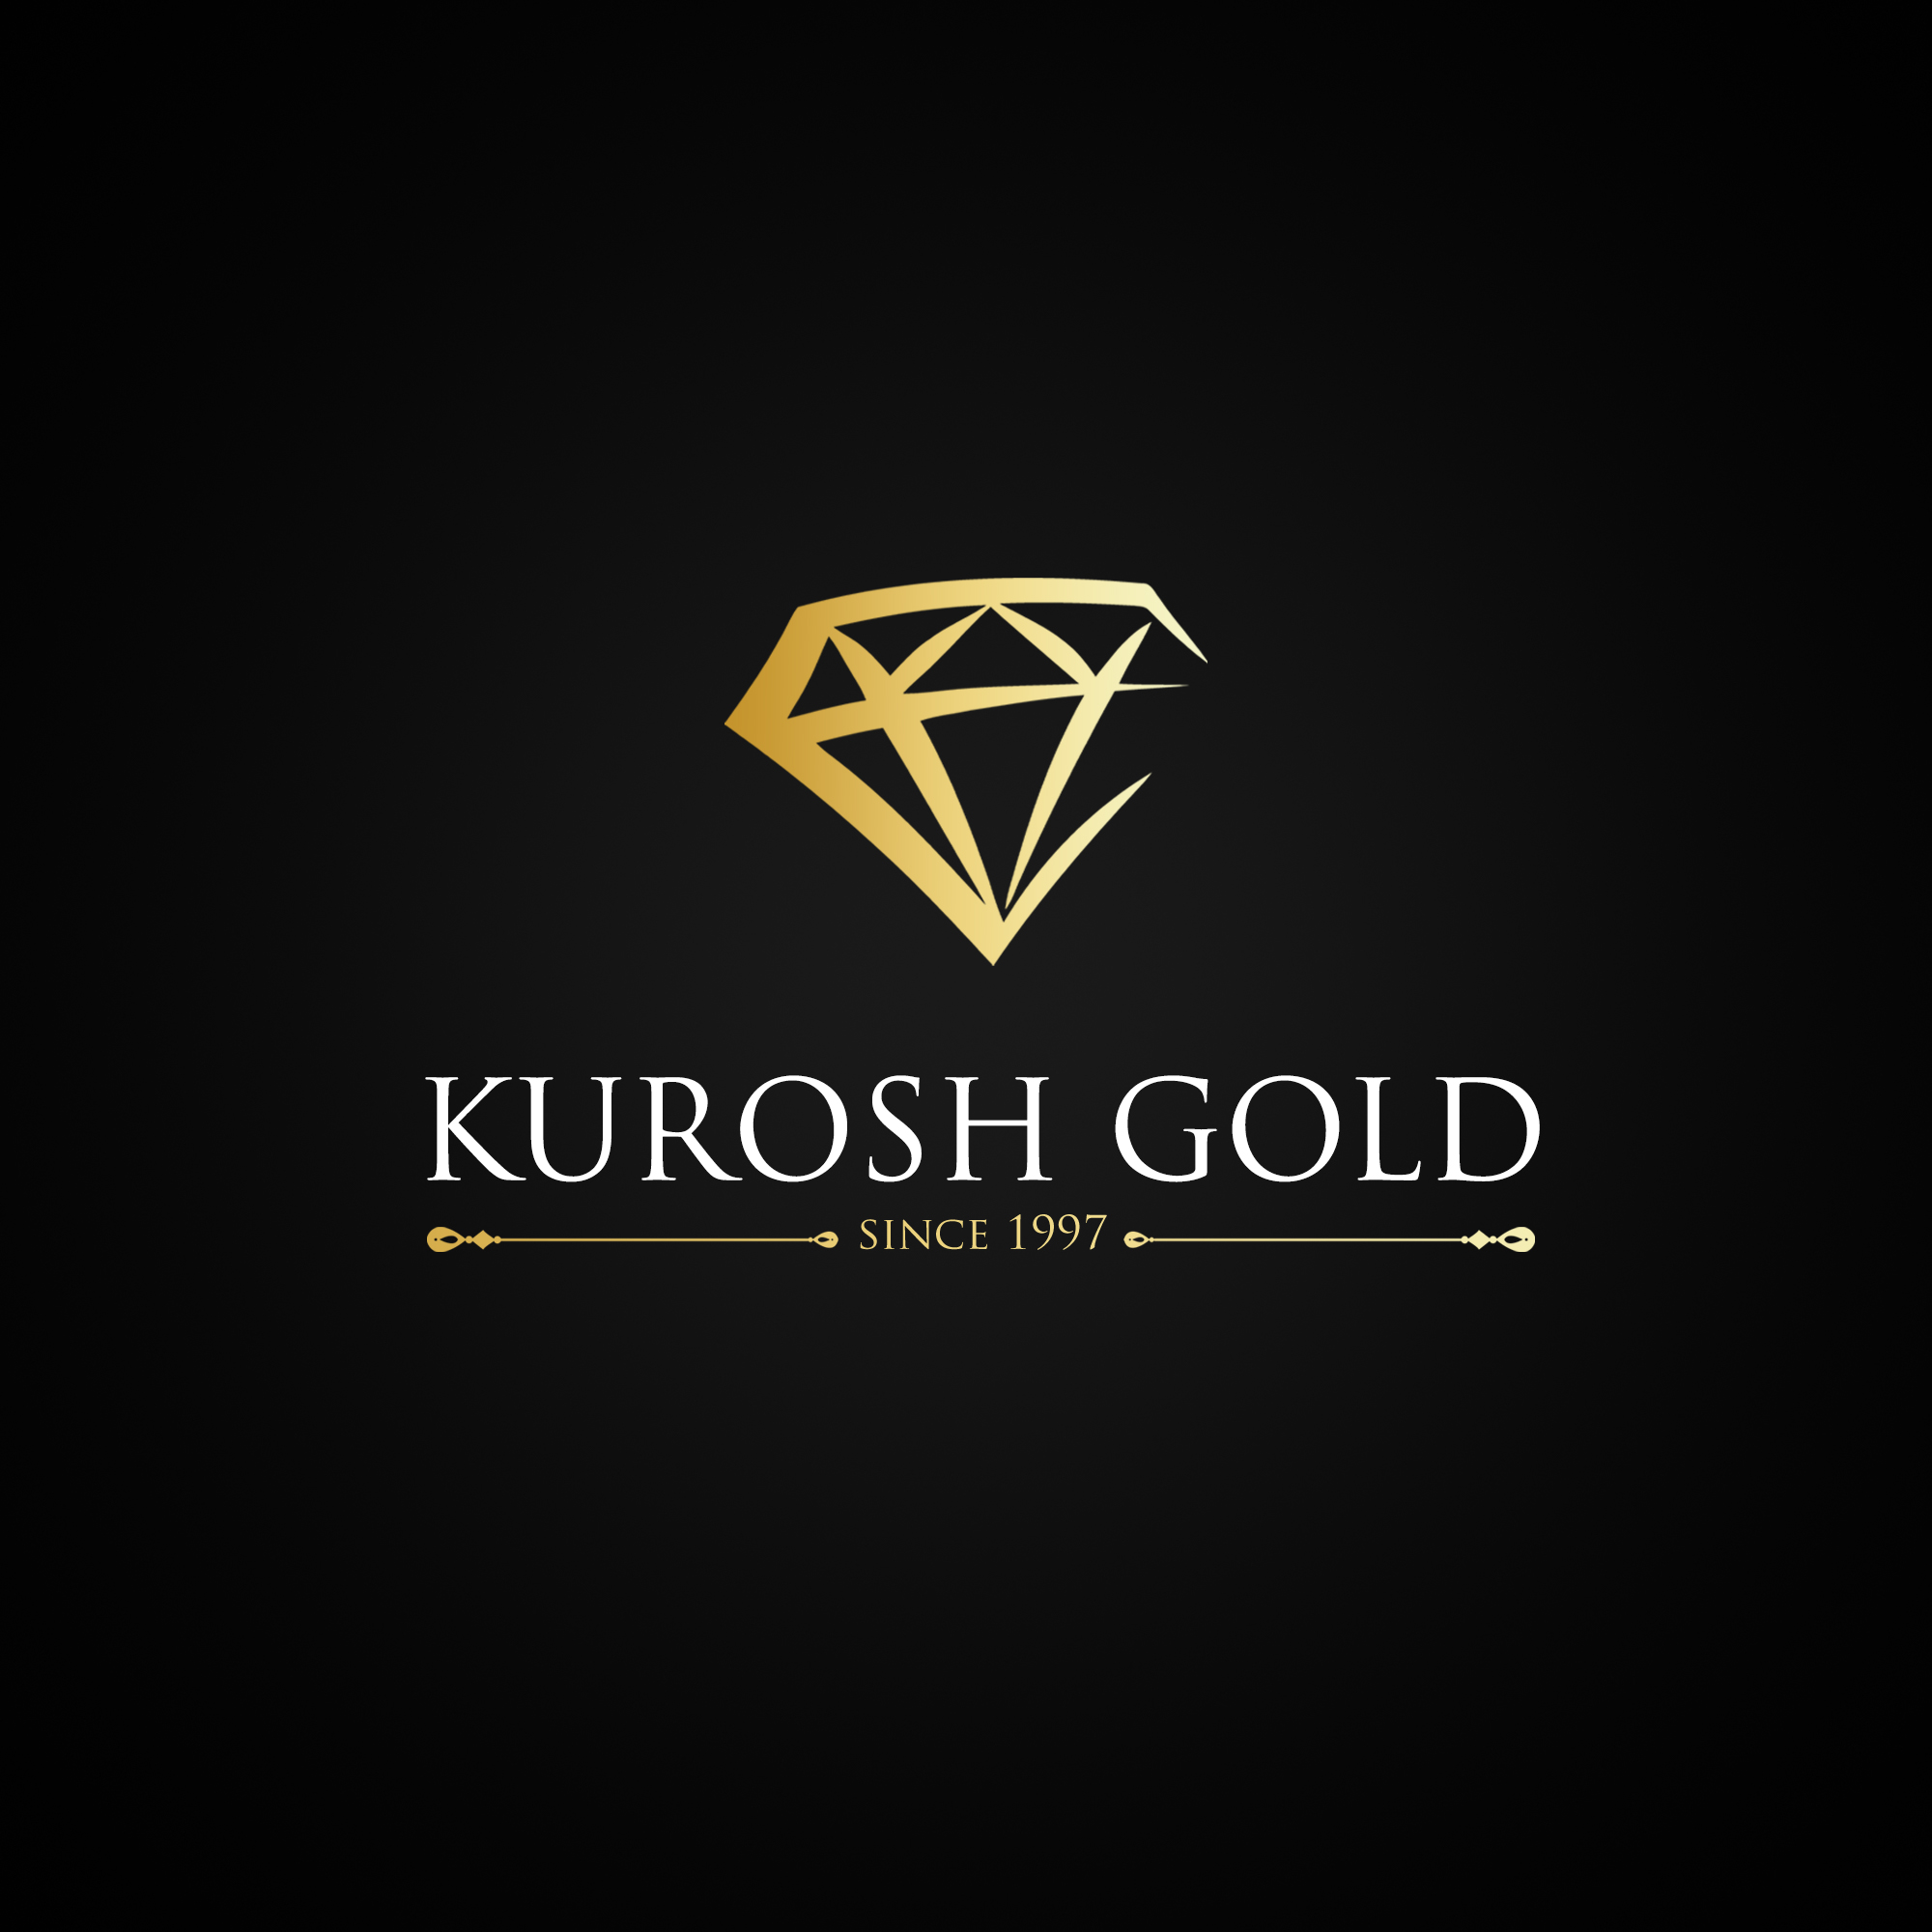 اطلاعات تخصصی صنعت طلا و جواهر